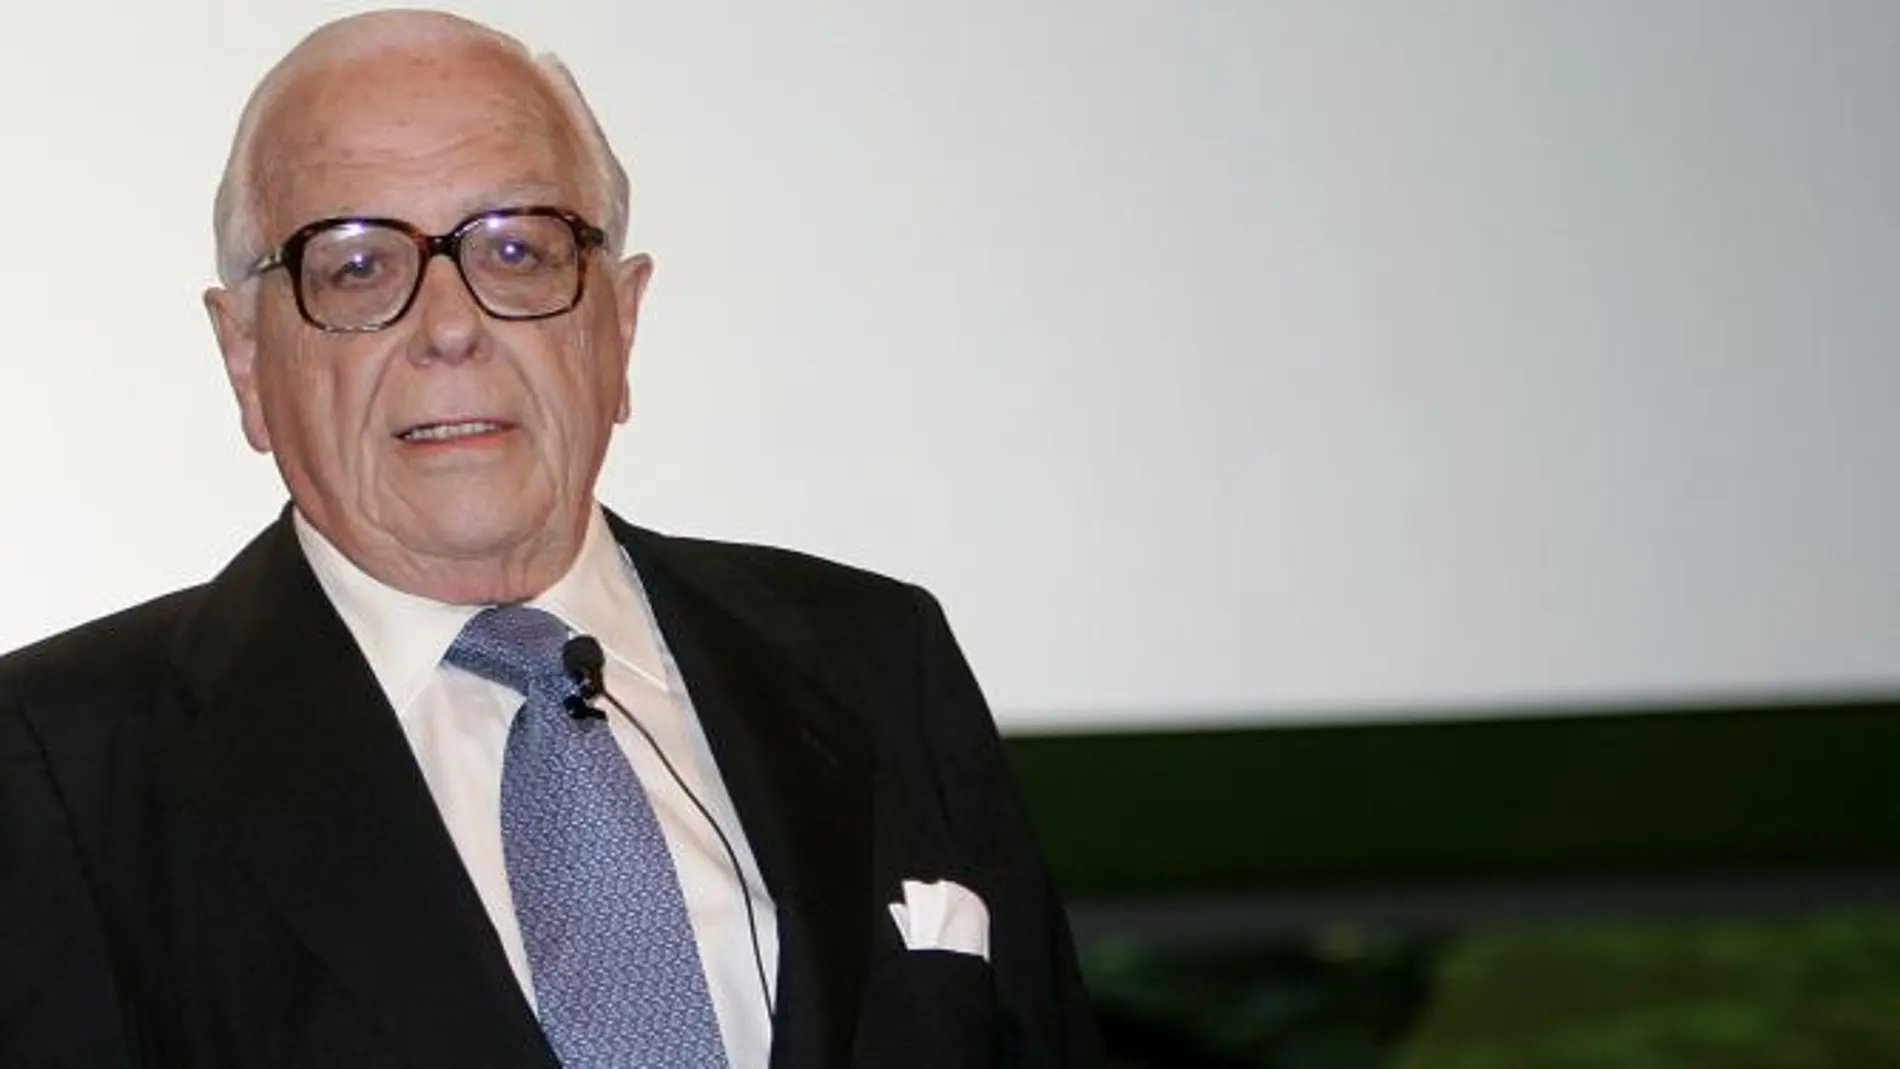 Fallece Iñigo de Oriol, expresidente de Iberdrola